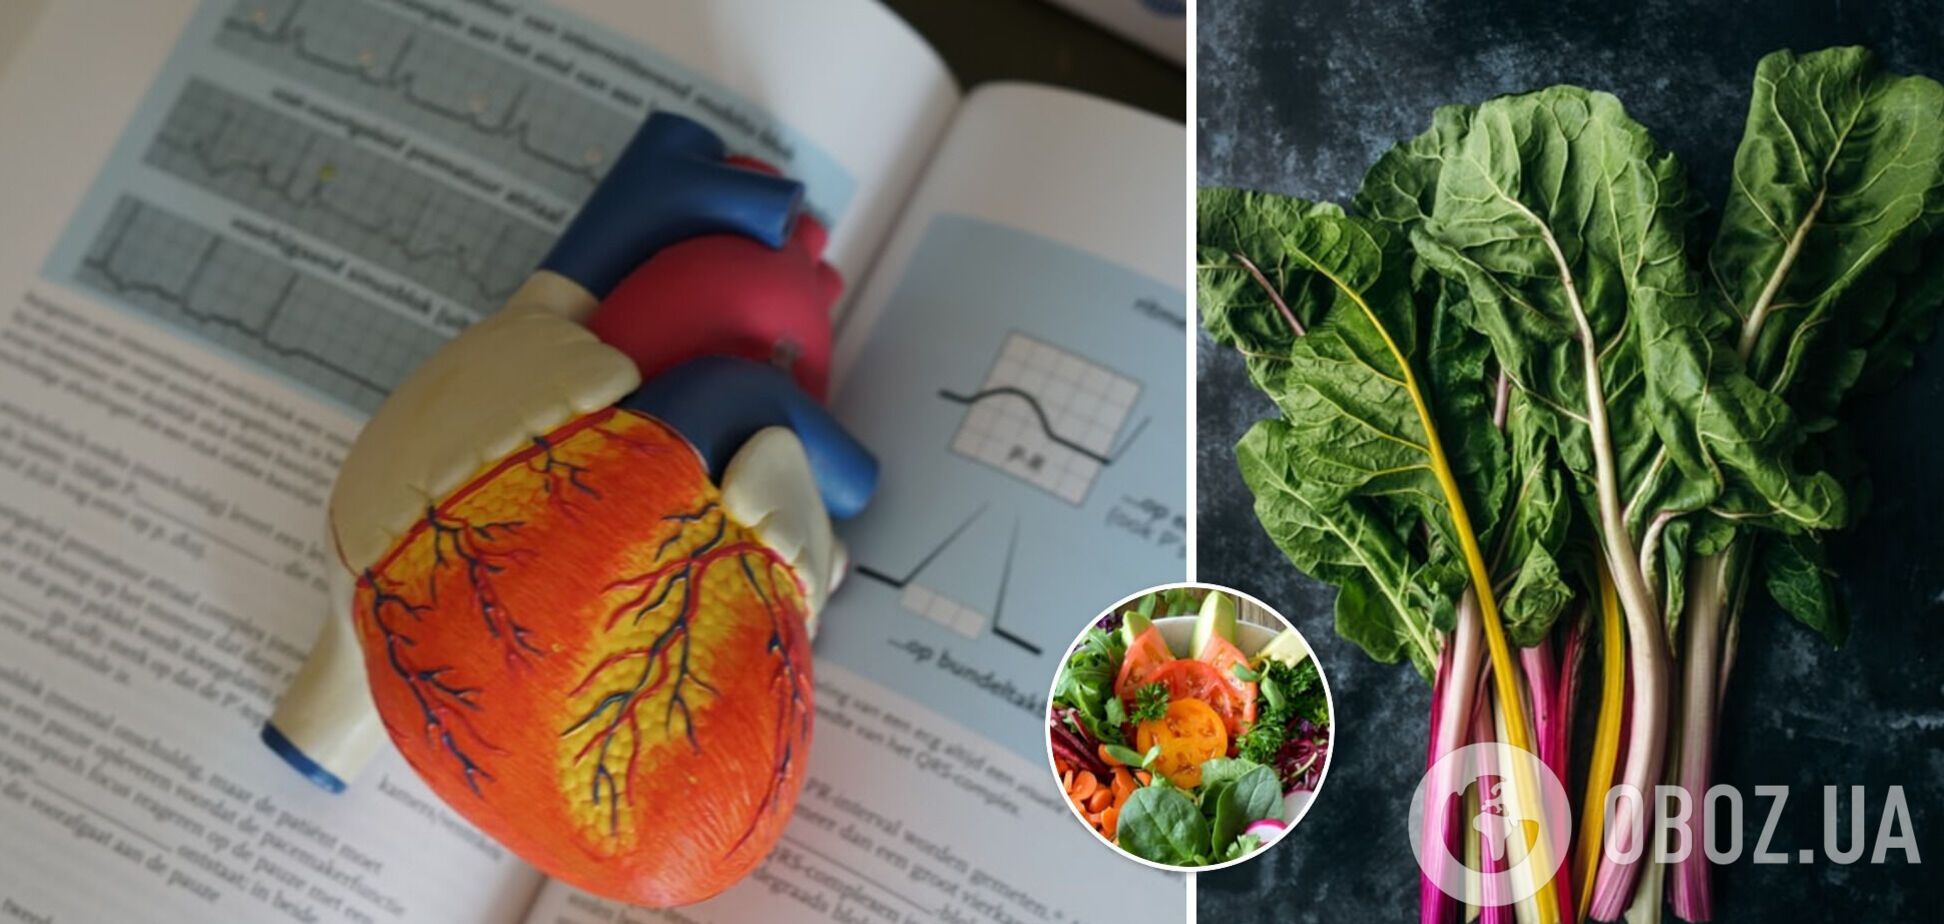 Вчені назвали овочі, вживання яких сприяє зниженню тиску